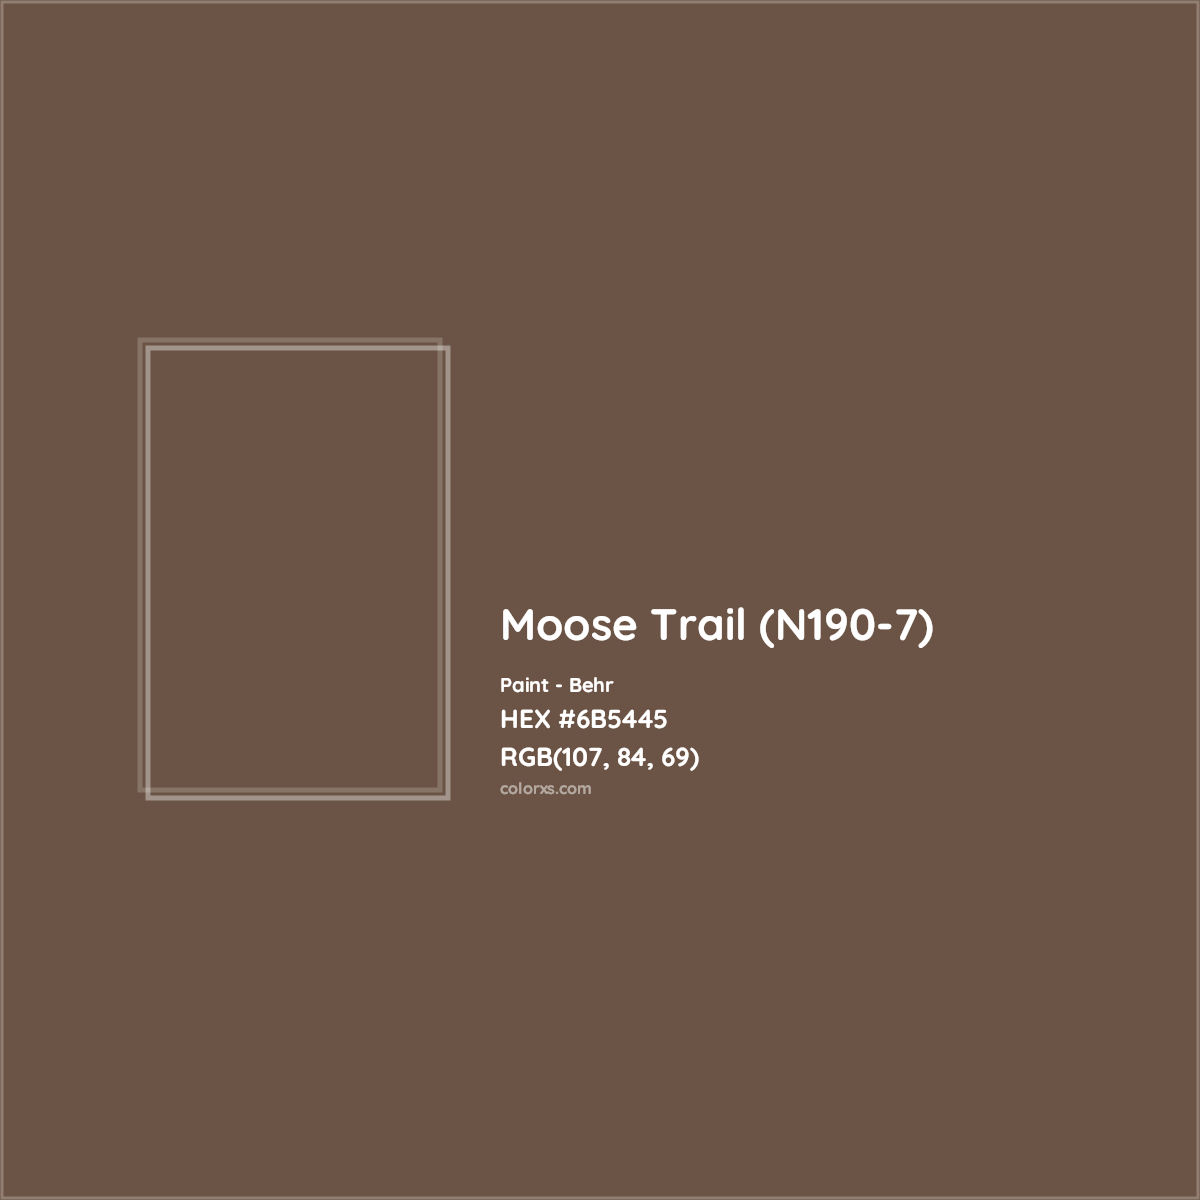 HEX #6B5445 Moose Trail (N190-7) Paint Behr - Color Code